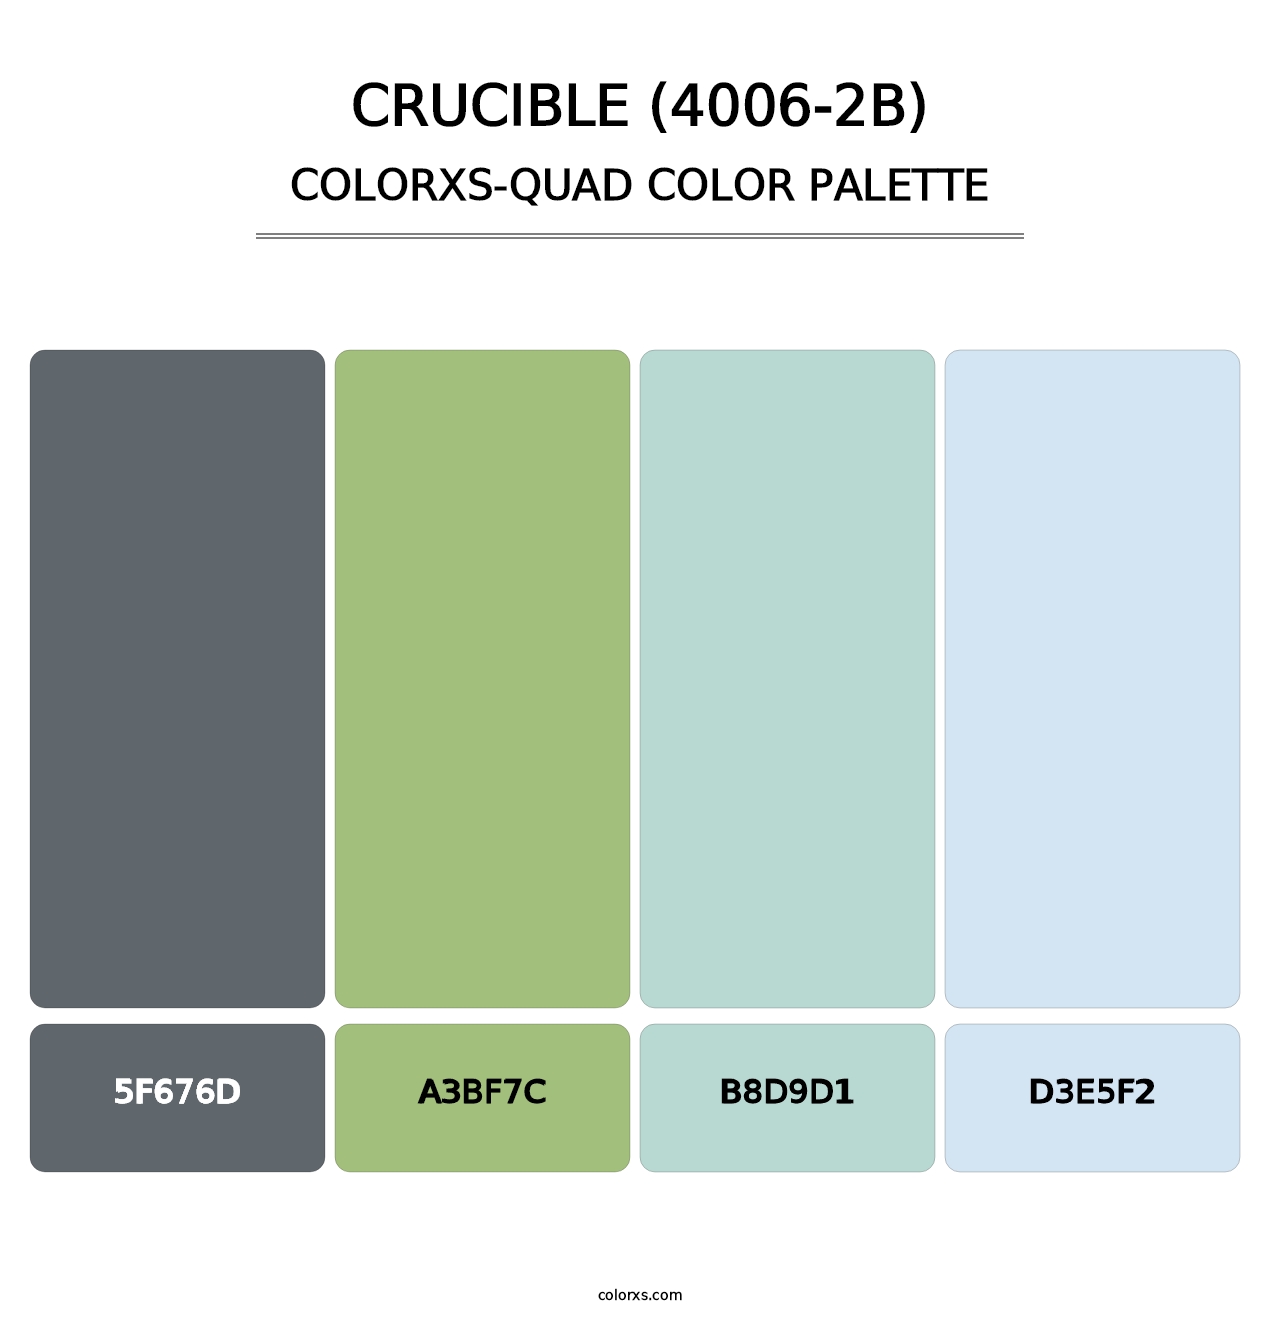 Crucible (4006-2B) - Colorxs Quad Palette